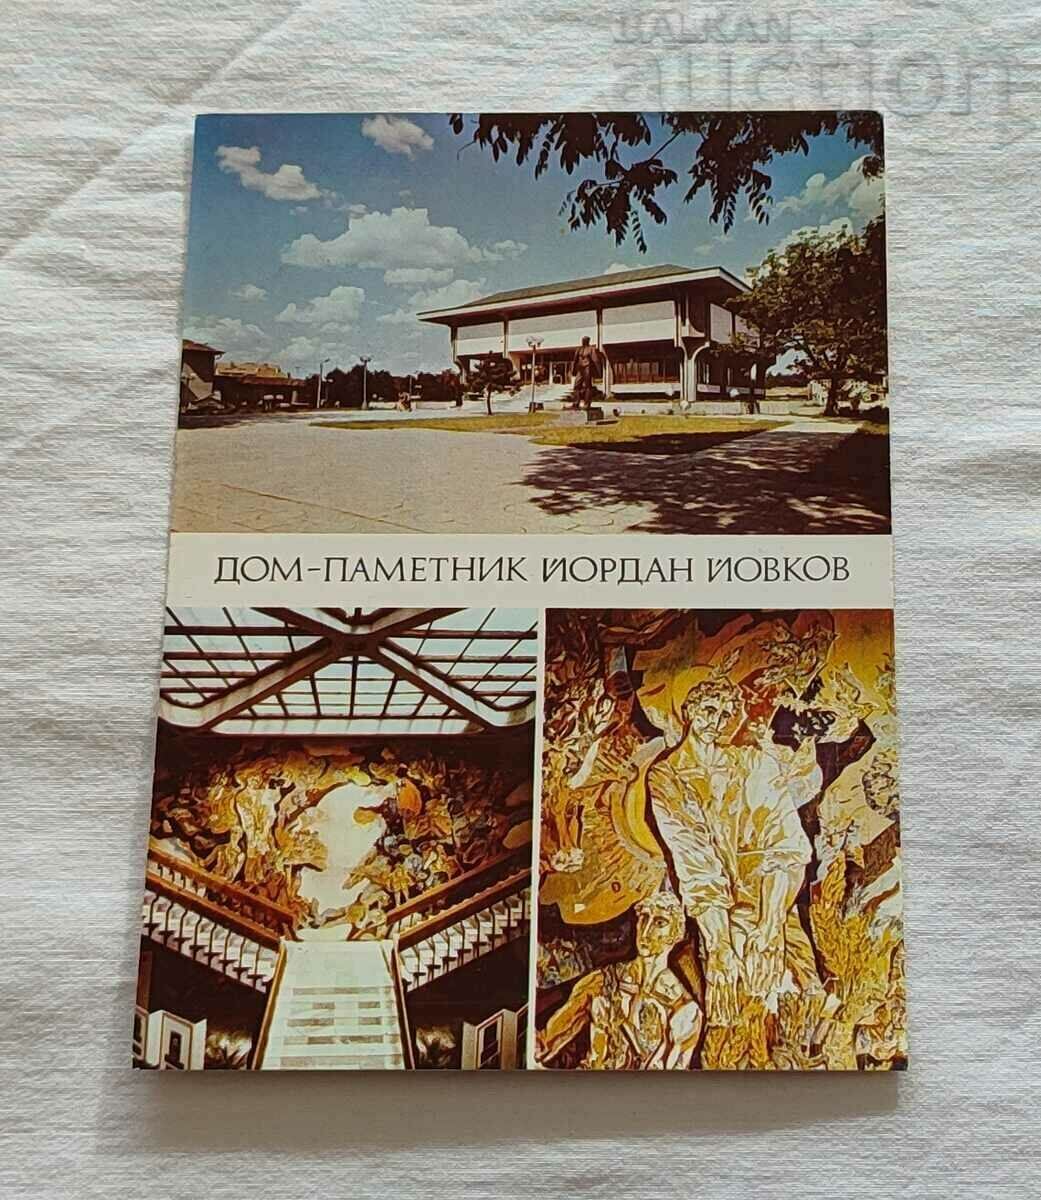 TOLBUKHIN/DOBRICH MEMORIAL HOUSE "Y. YOVKOV" 1983 Τ.Κ.